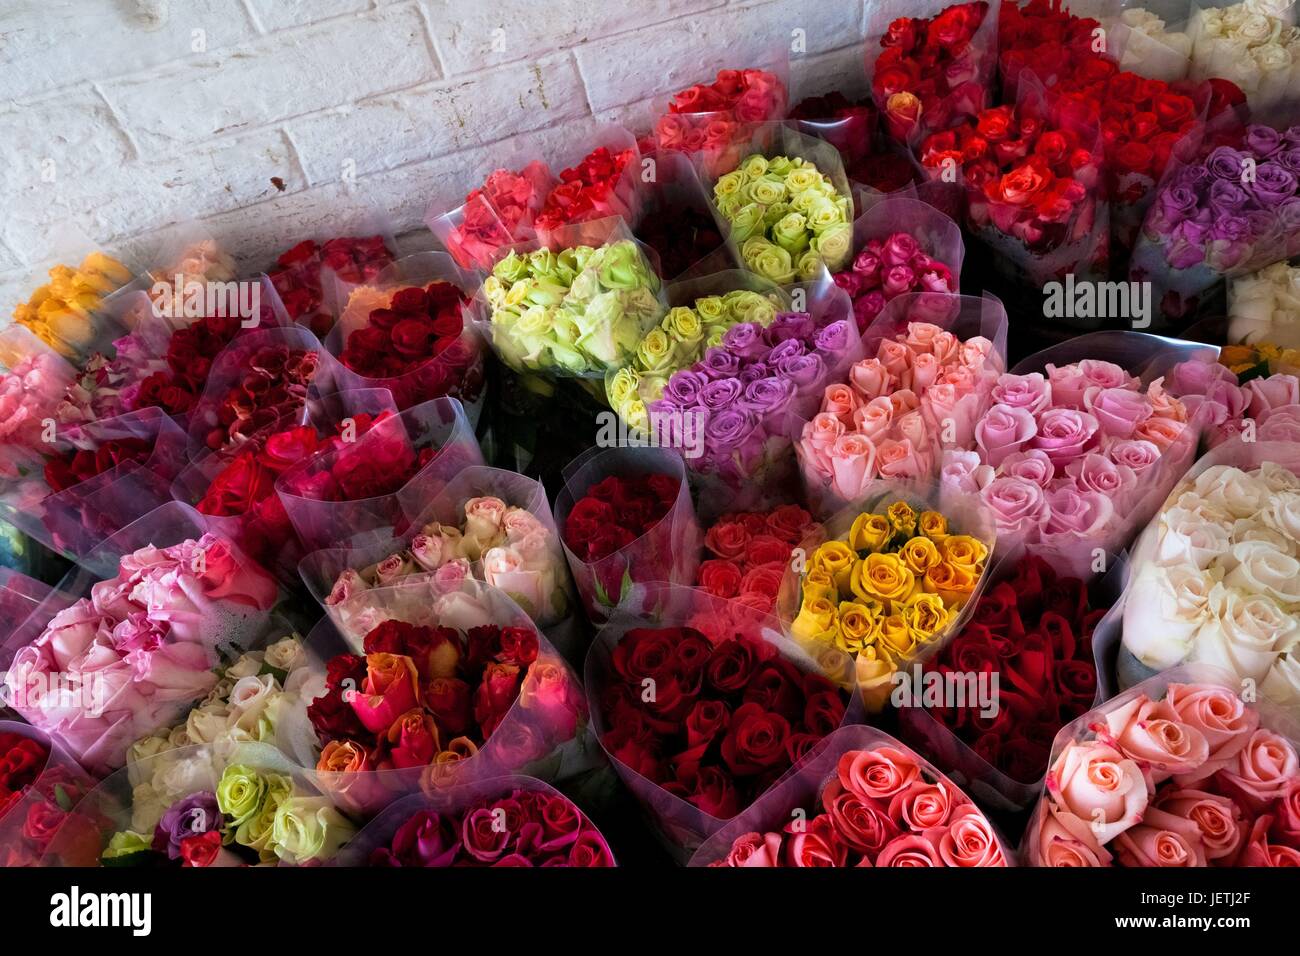 Розы оптом от производителя. Тонны цветов. Розы из Армении. Подмосковные розы оптом. 2 Тонны цветов.